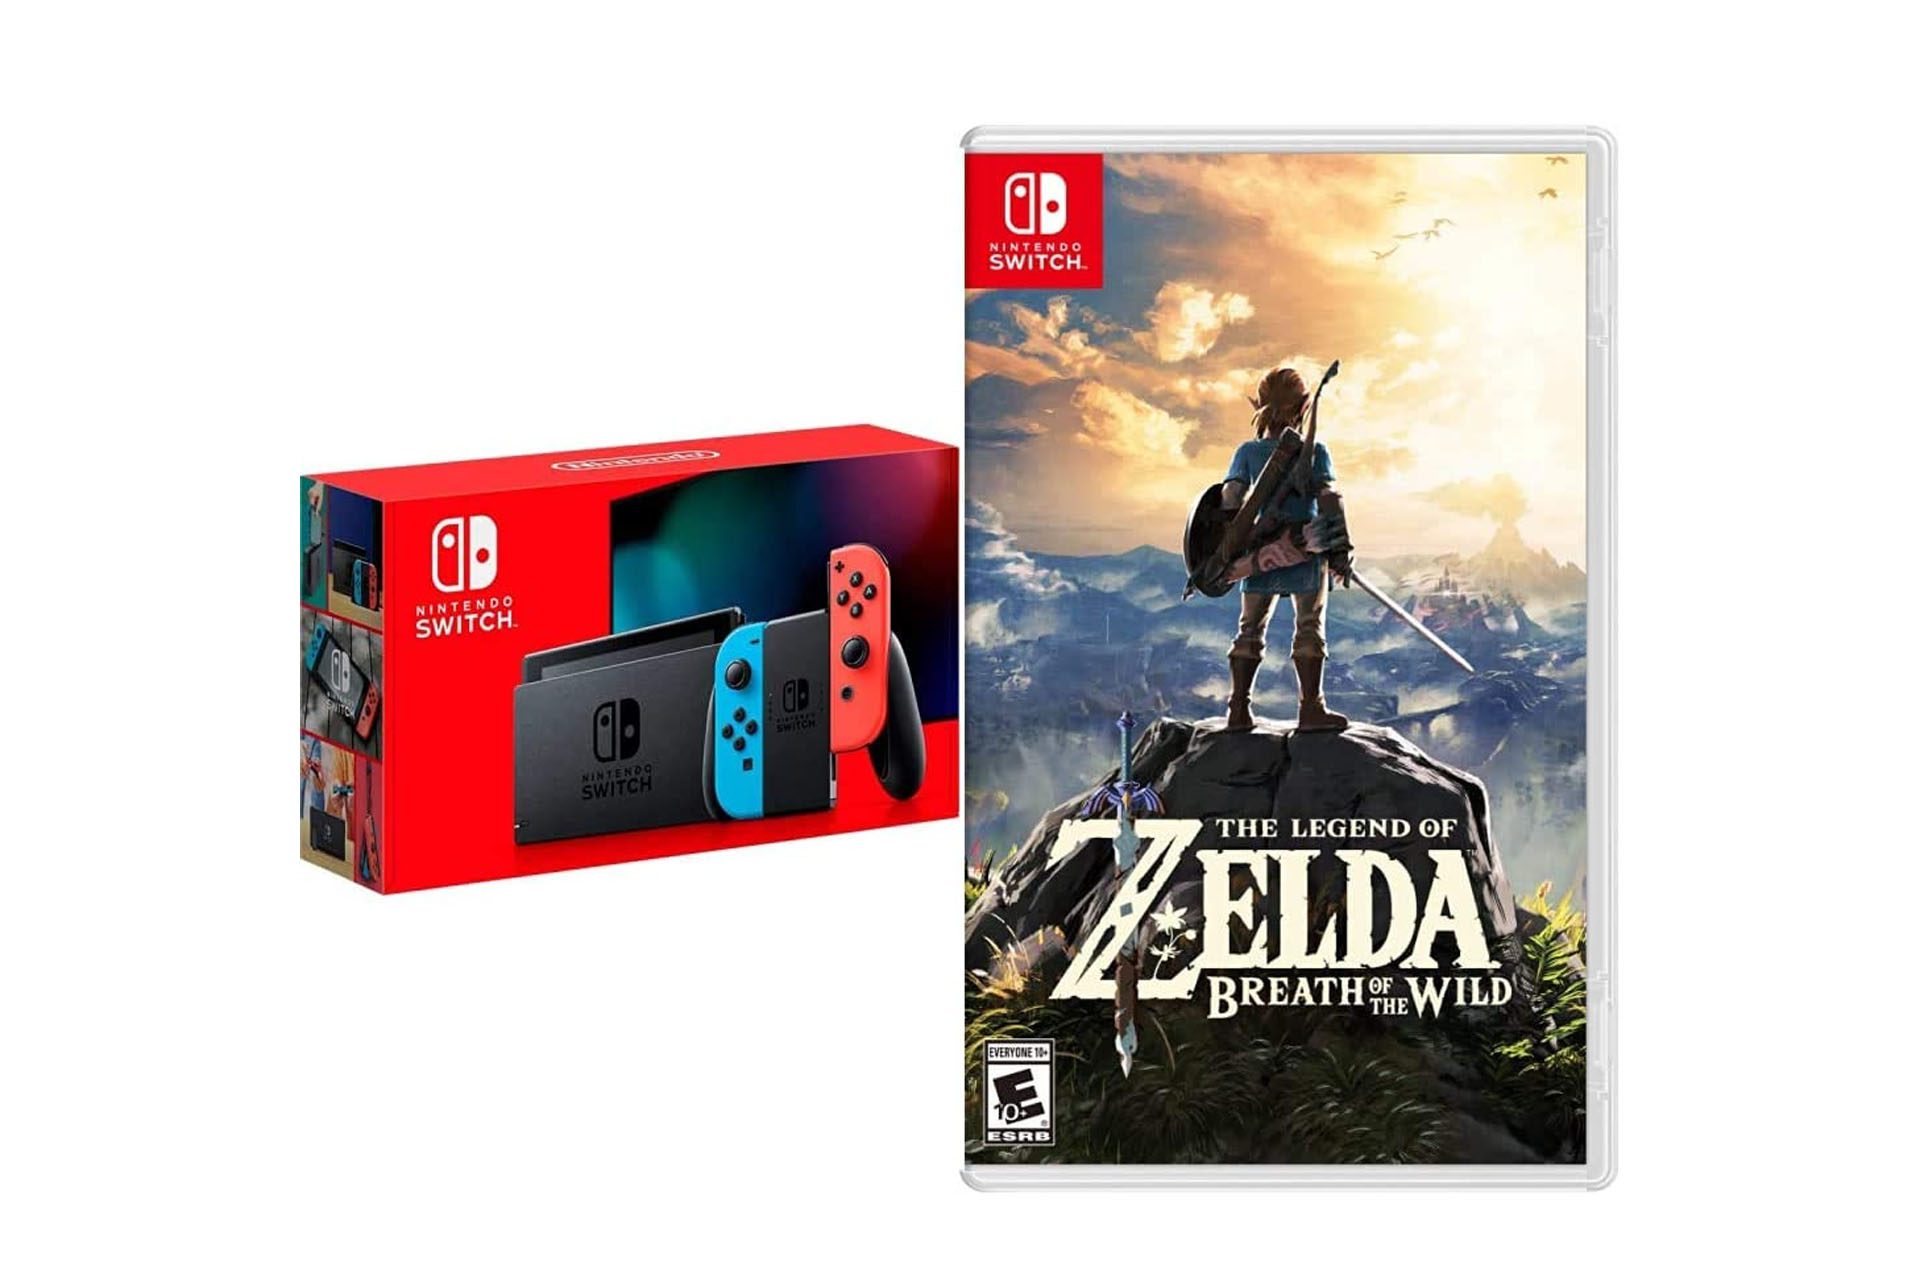 Productafbeelding voor de Nintendo Switch en The Legend of Zelda: Breath of the Wild